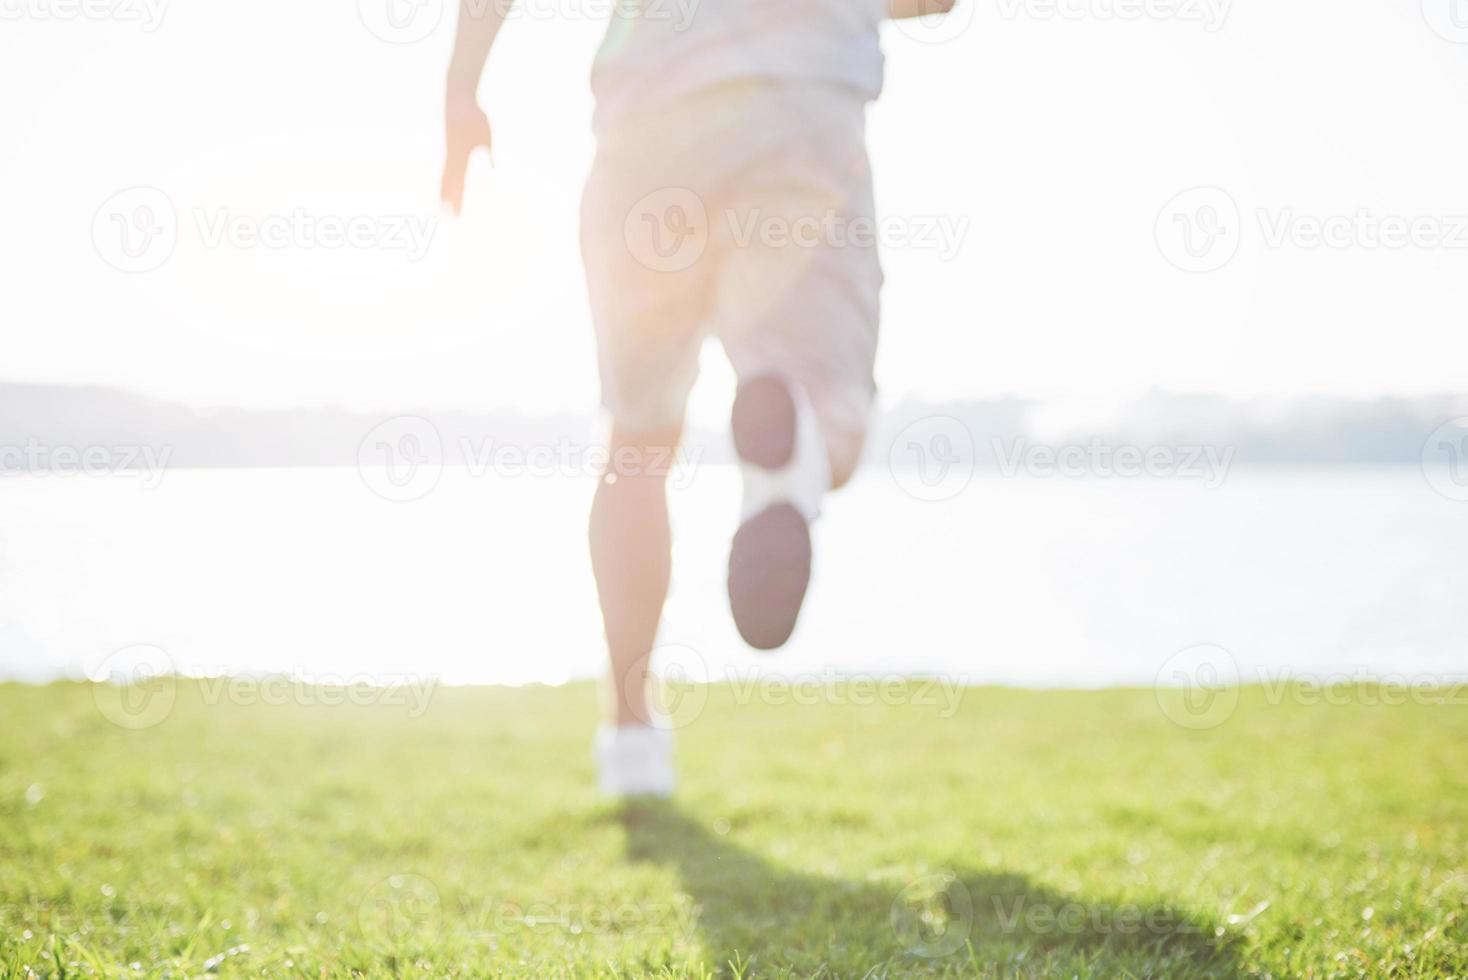 buiten langlaufen in zomerzonconcept voor sporten, fitness en een gezonde levensstijl. close-up van de voeten van een man die in het gras rent foto